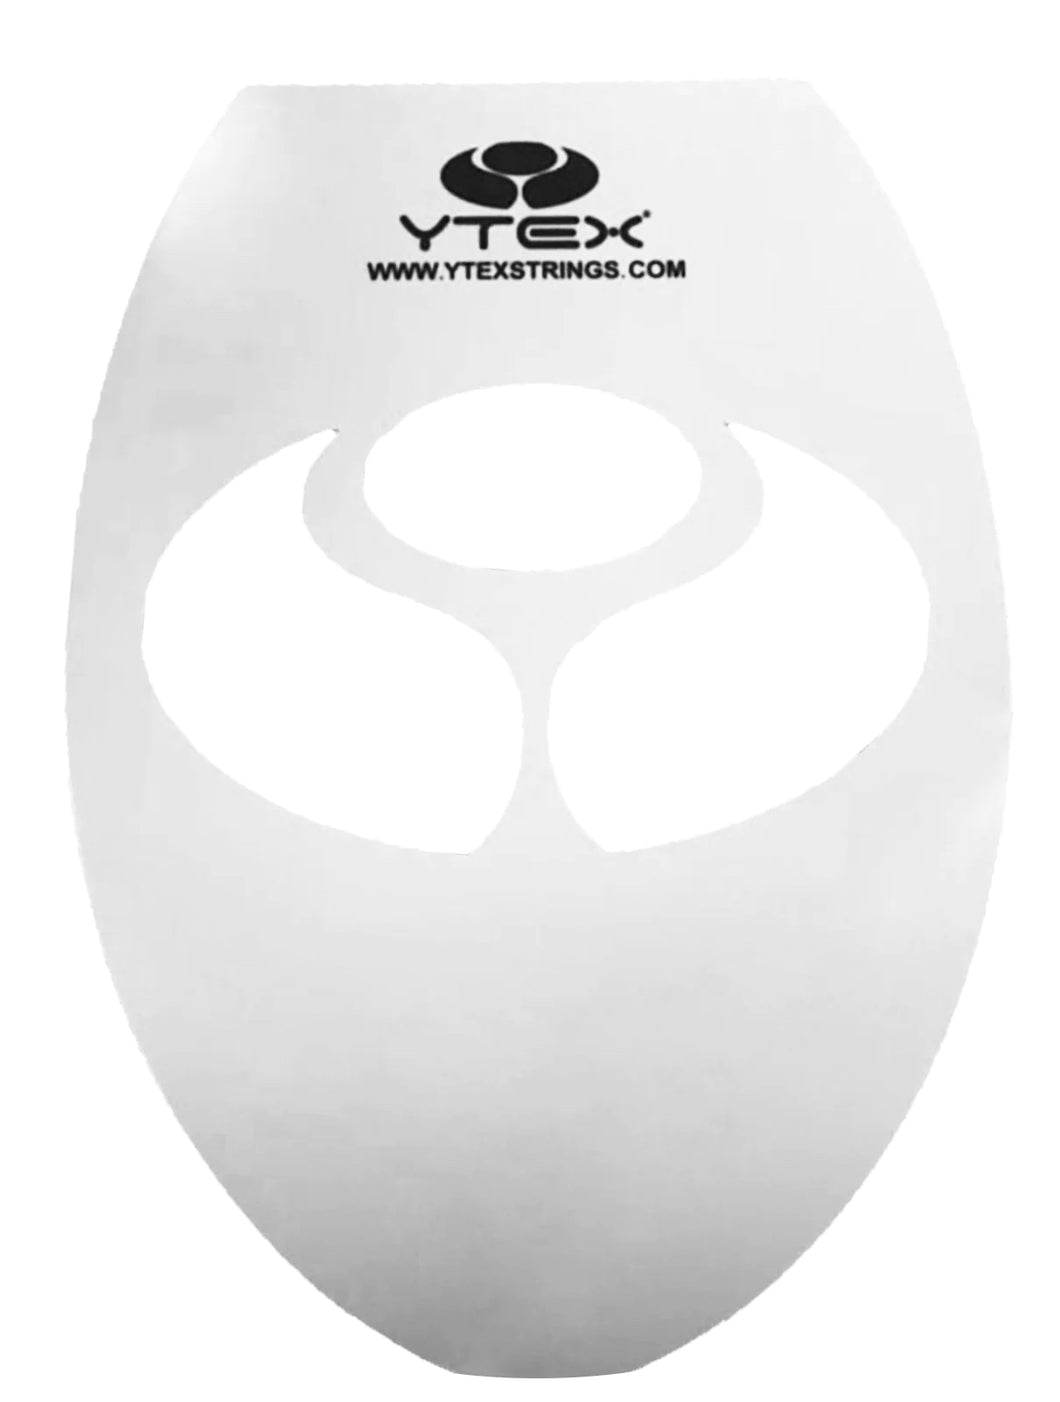 YTEX Strings Logo Stencil